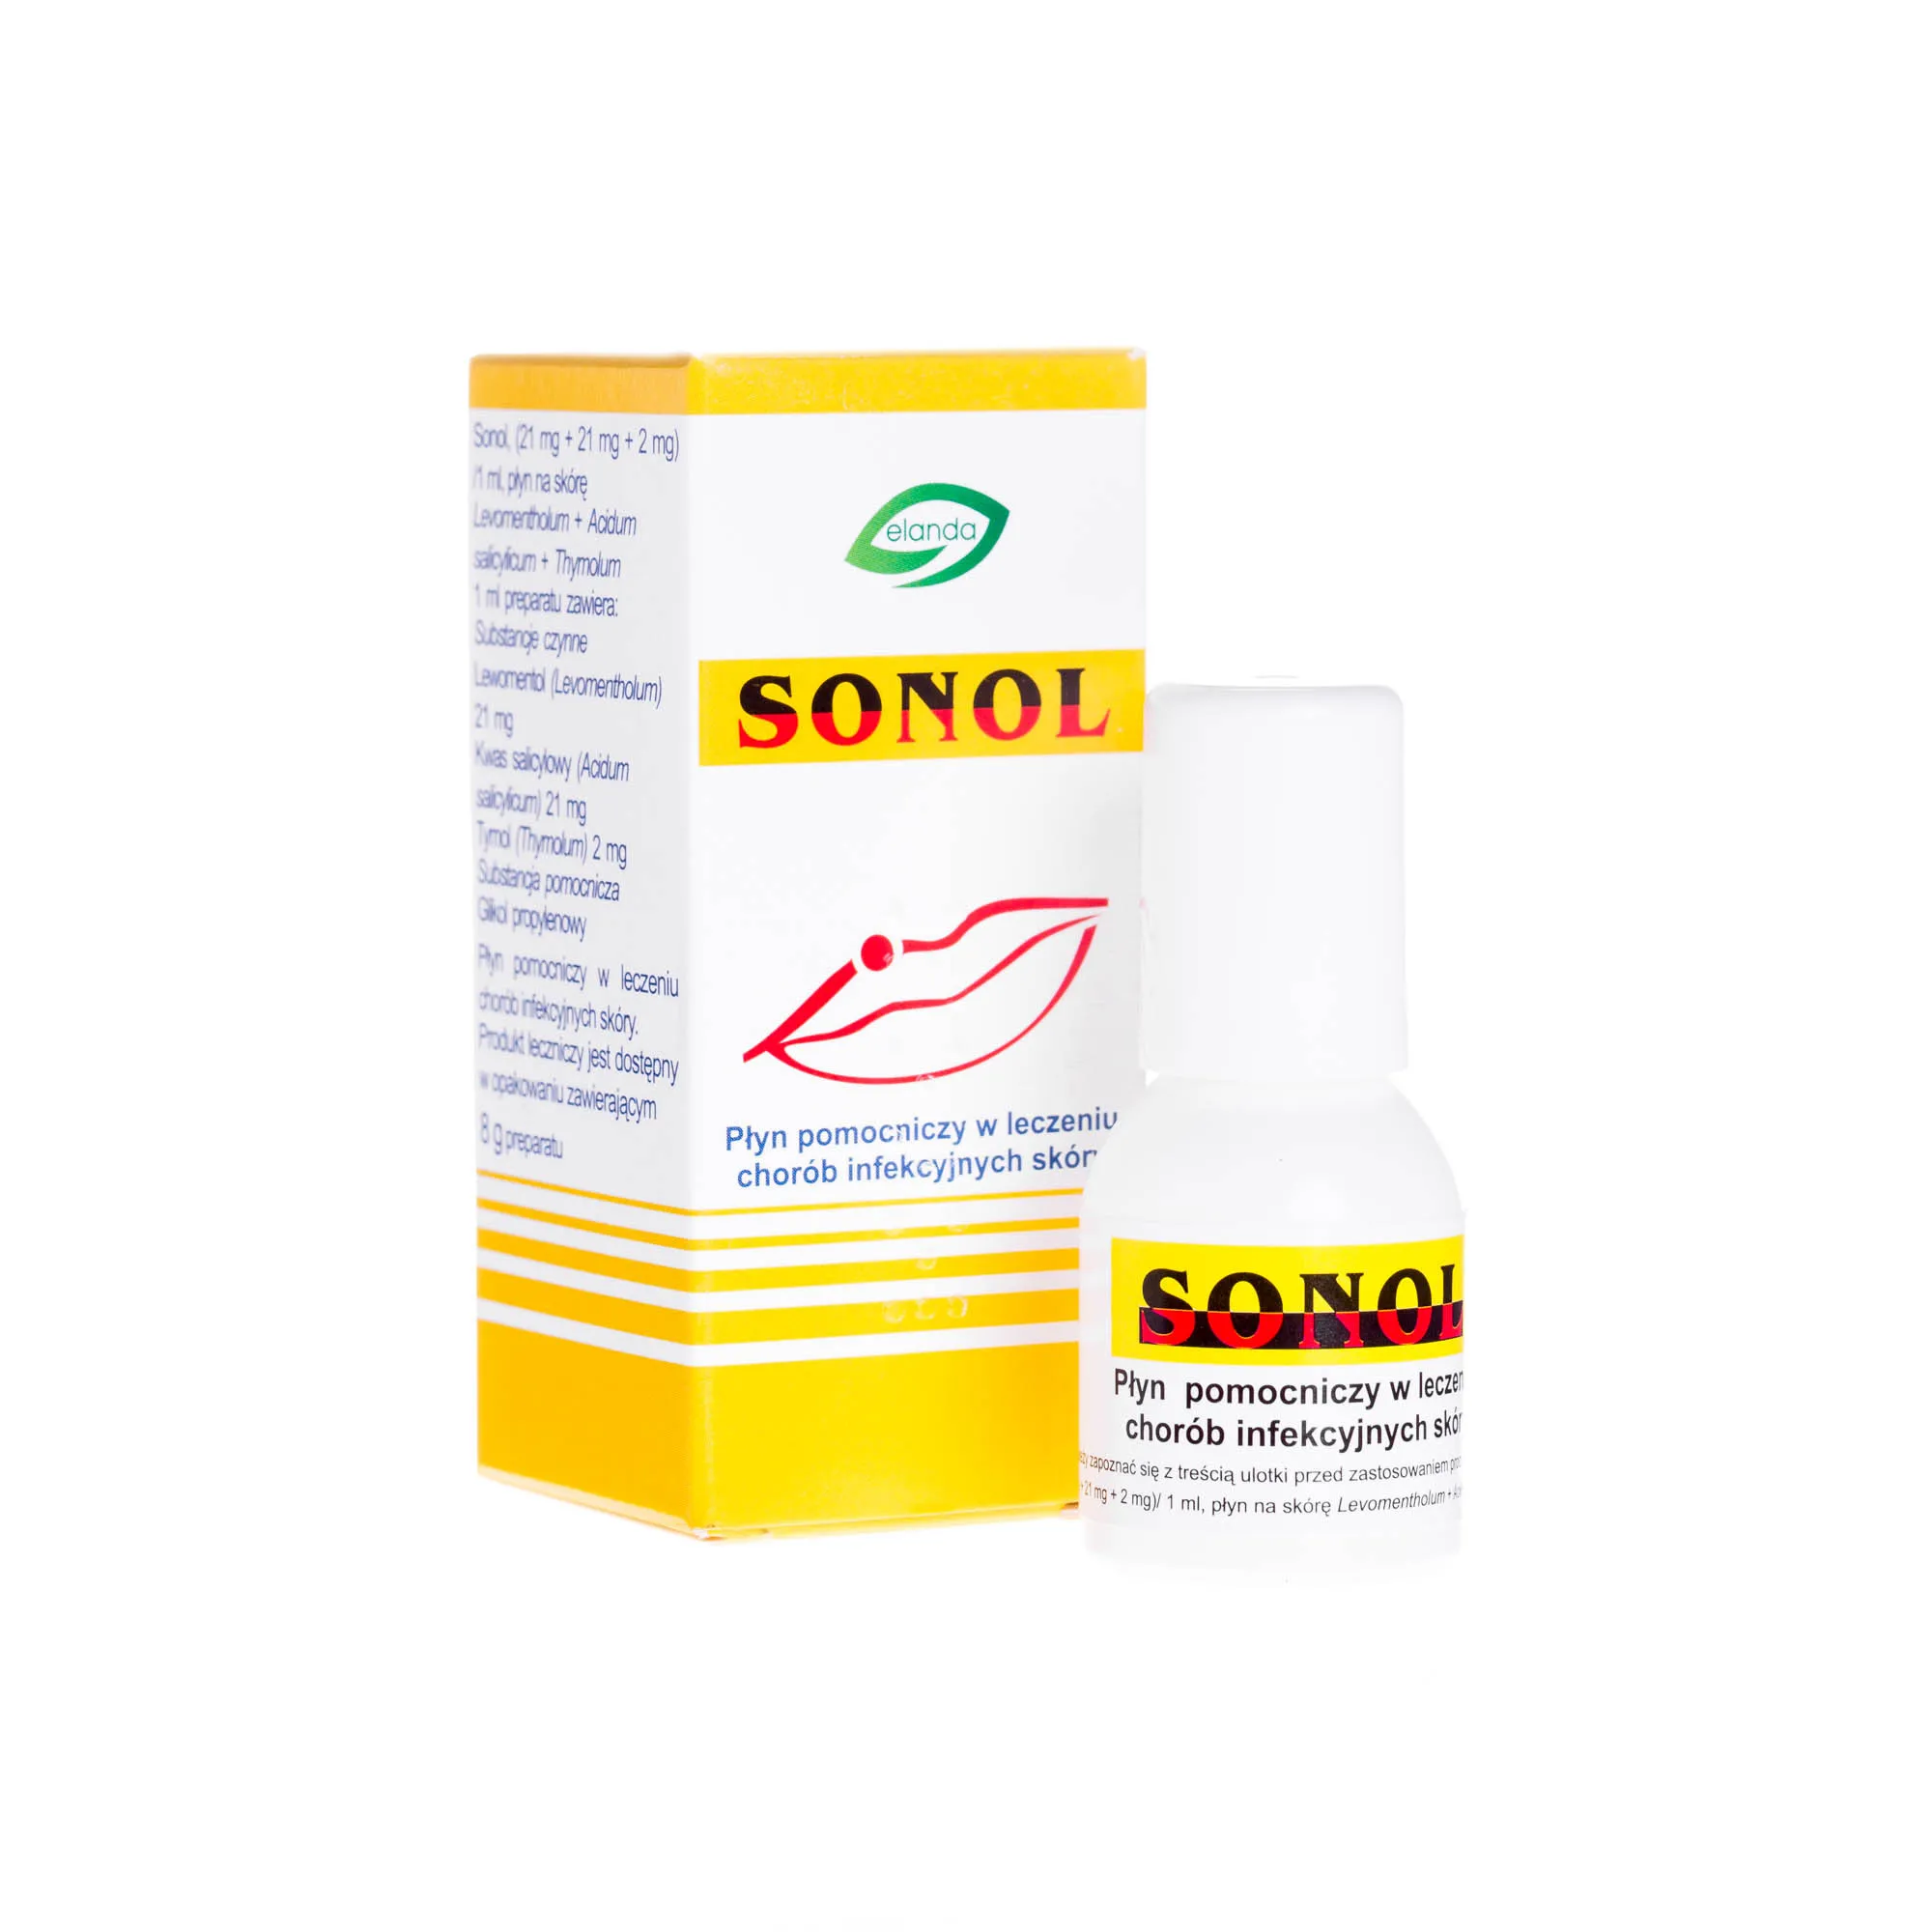 Sonol - płyn pomocniczy w leczeniu chorób infekcyjnych skóry, 8 g